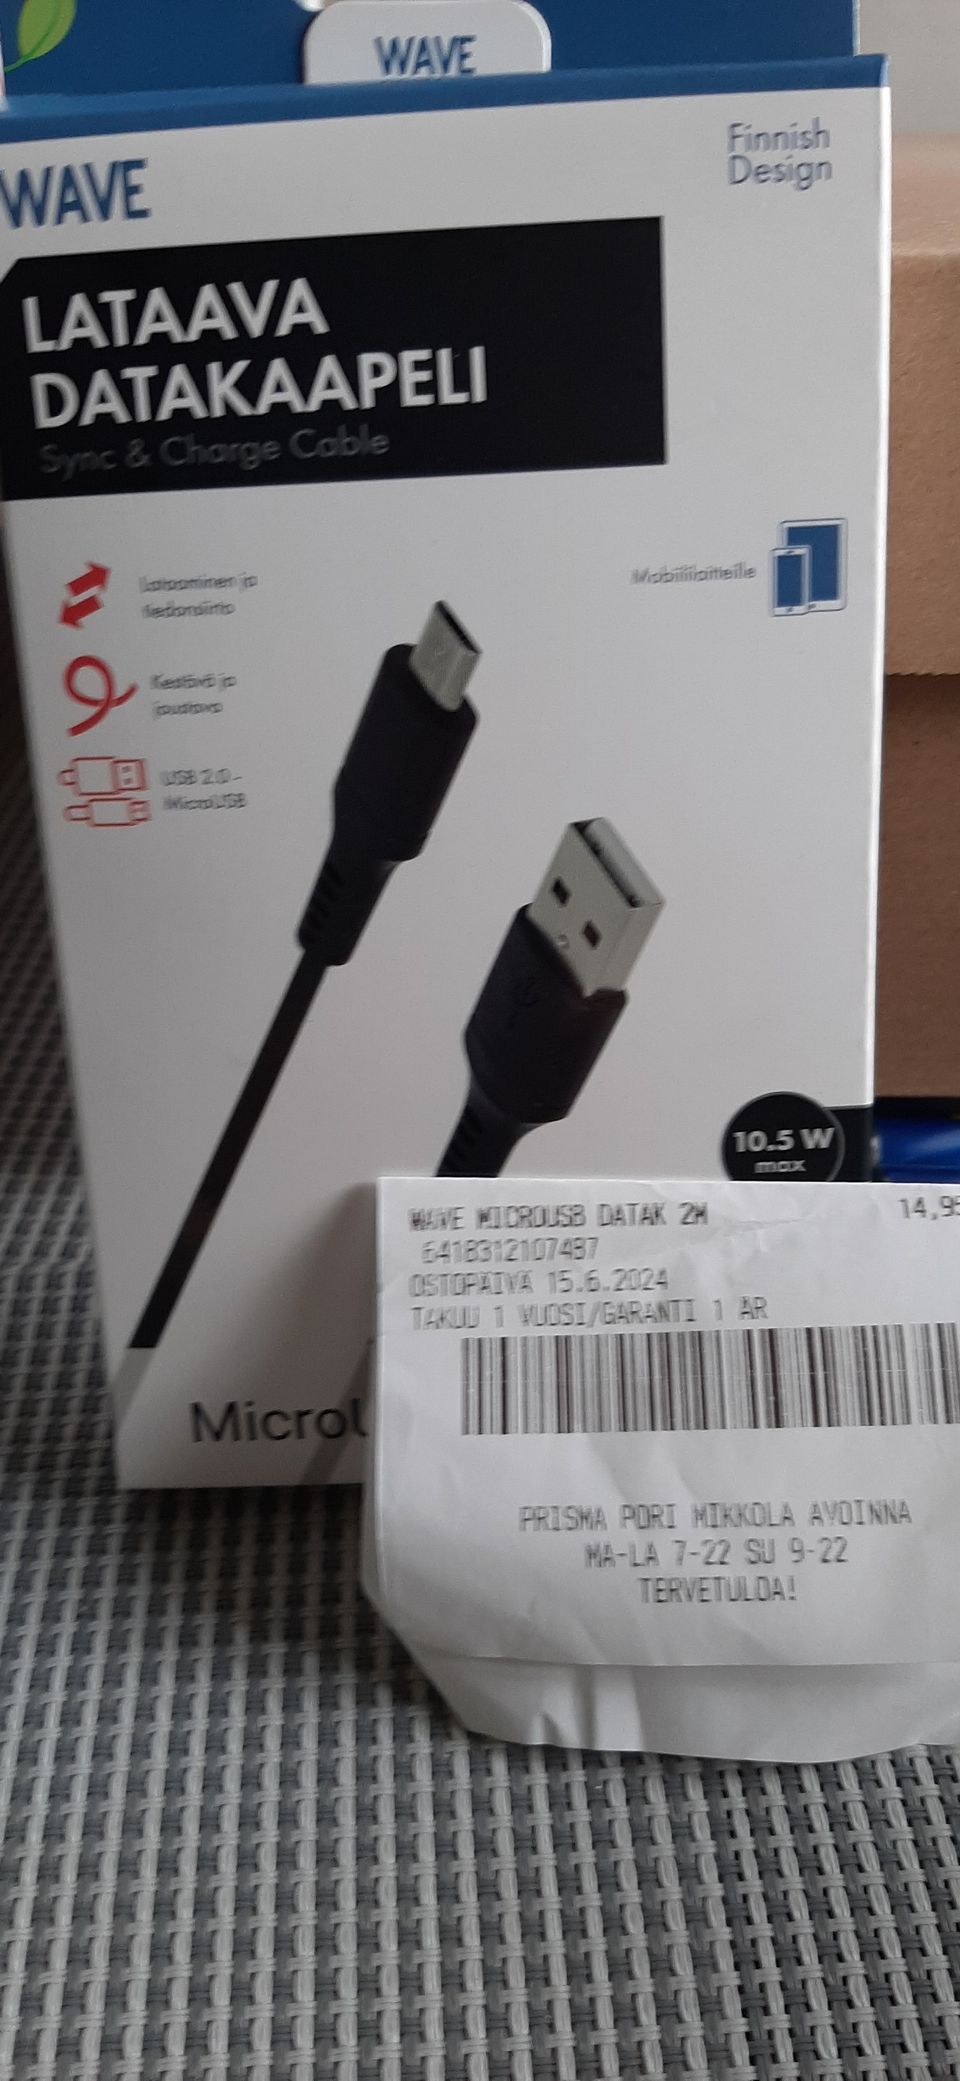 Micro USB lataava datakaapeli 2 m